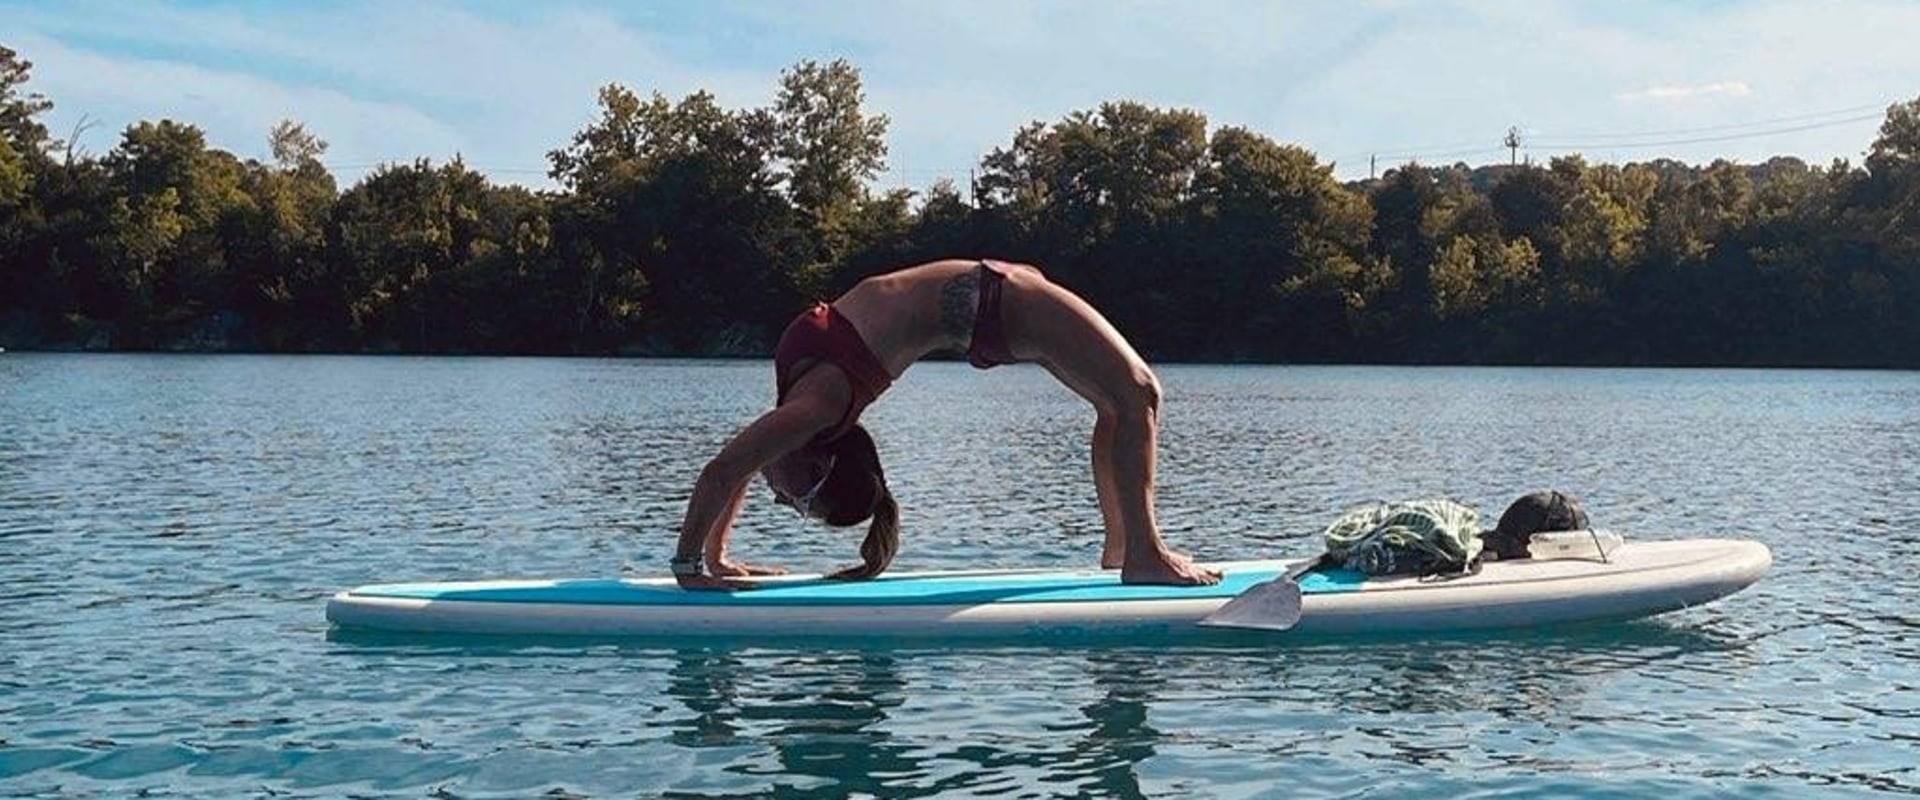 Welche Art von Paddelboard eignet sich am besten für Yoga?